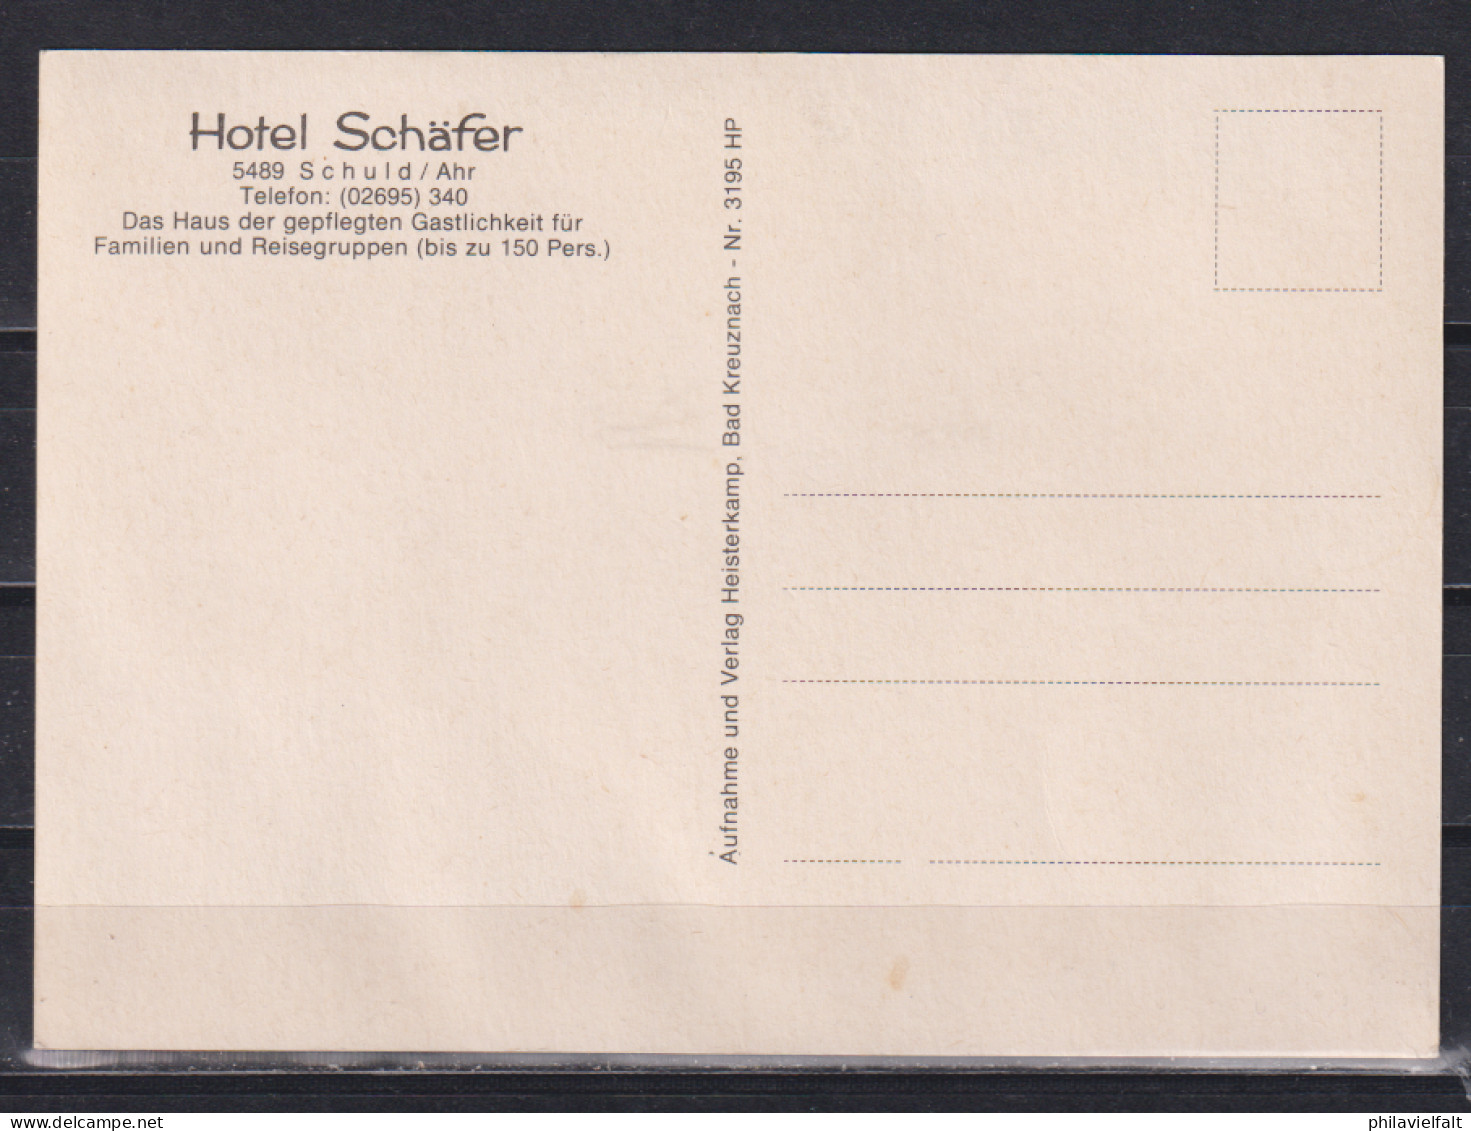 Bund Um 1950 Colorkarte Schuld/Ahr Hotel Schäfer , Ungebraucht - Bad Neuenahr-Ahrweiler